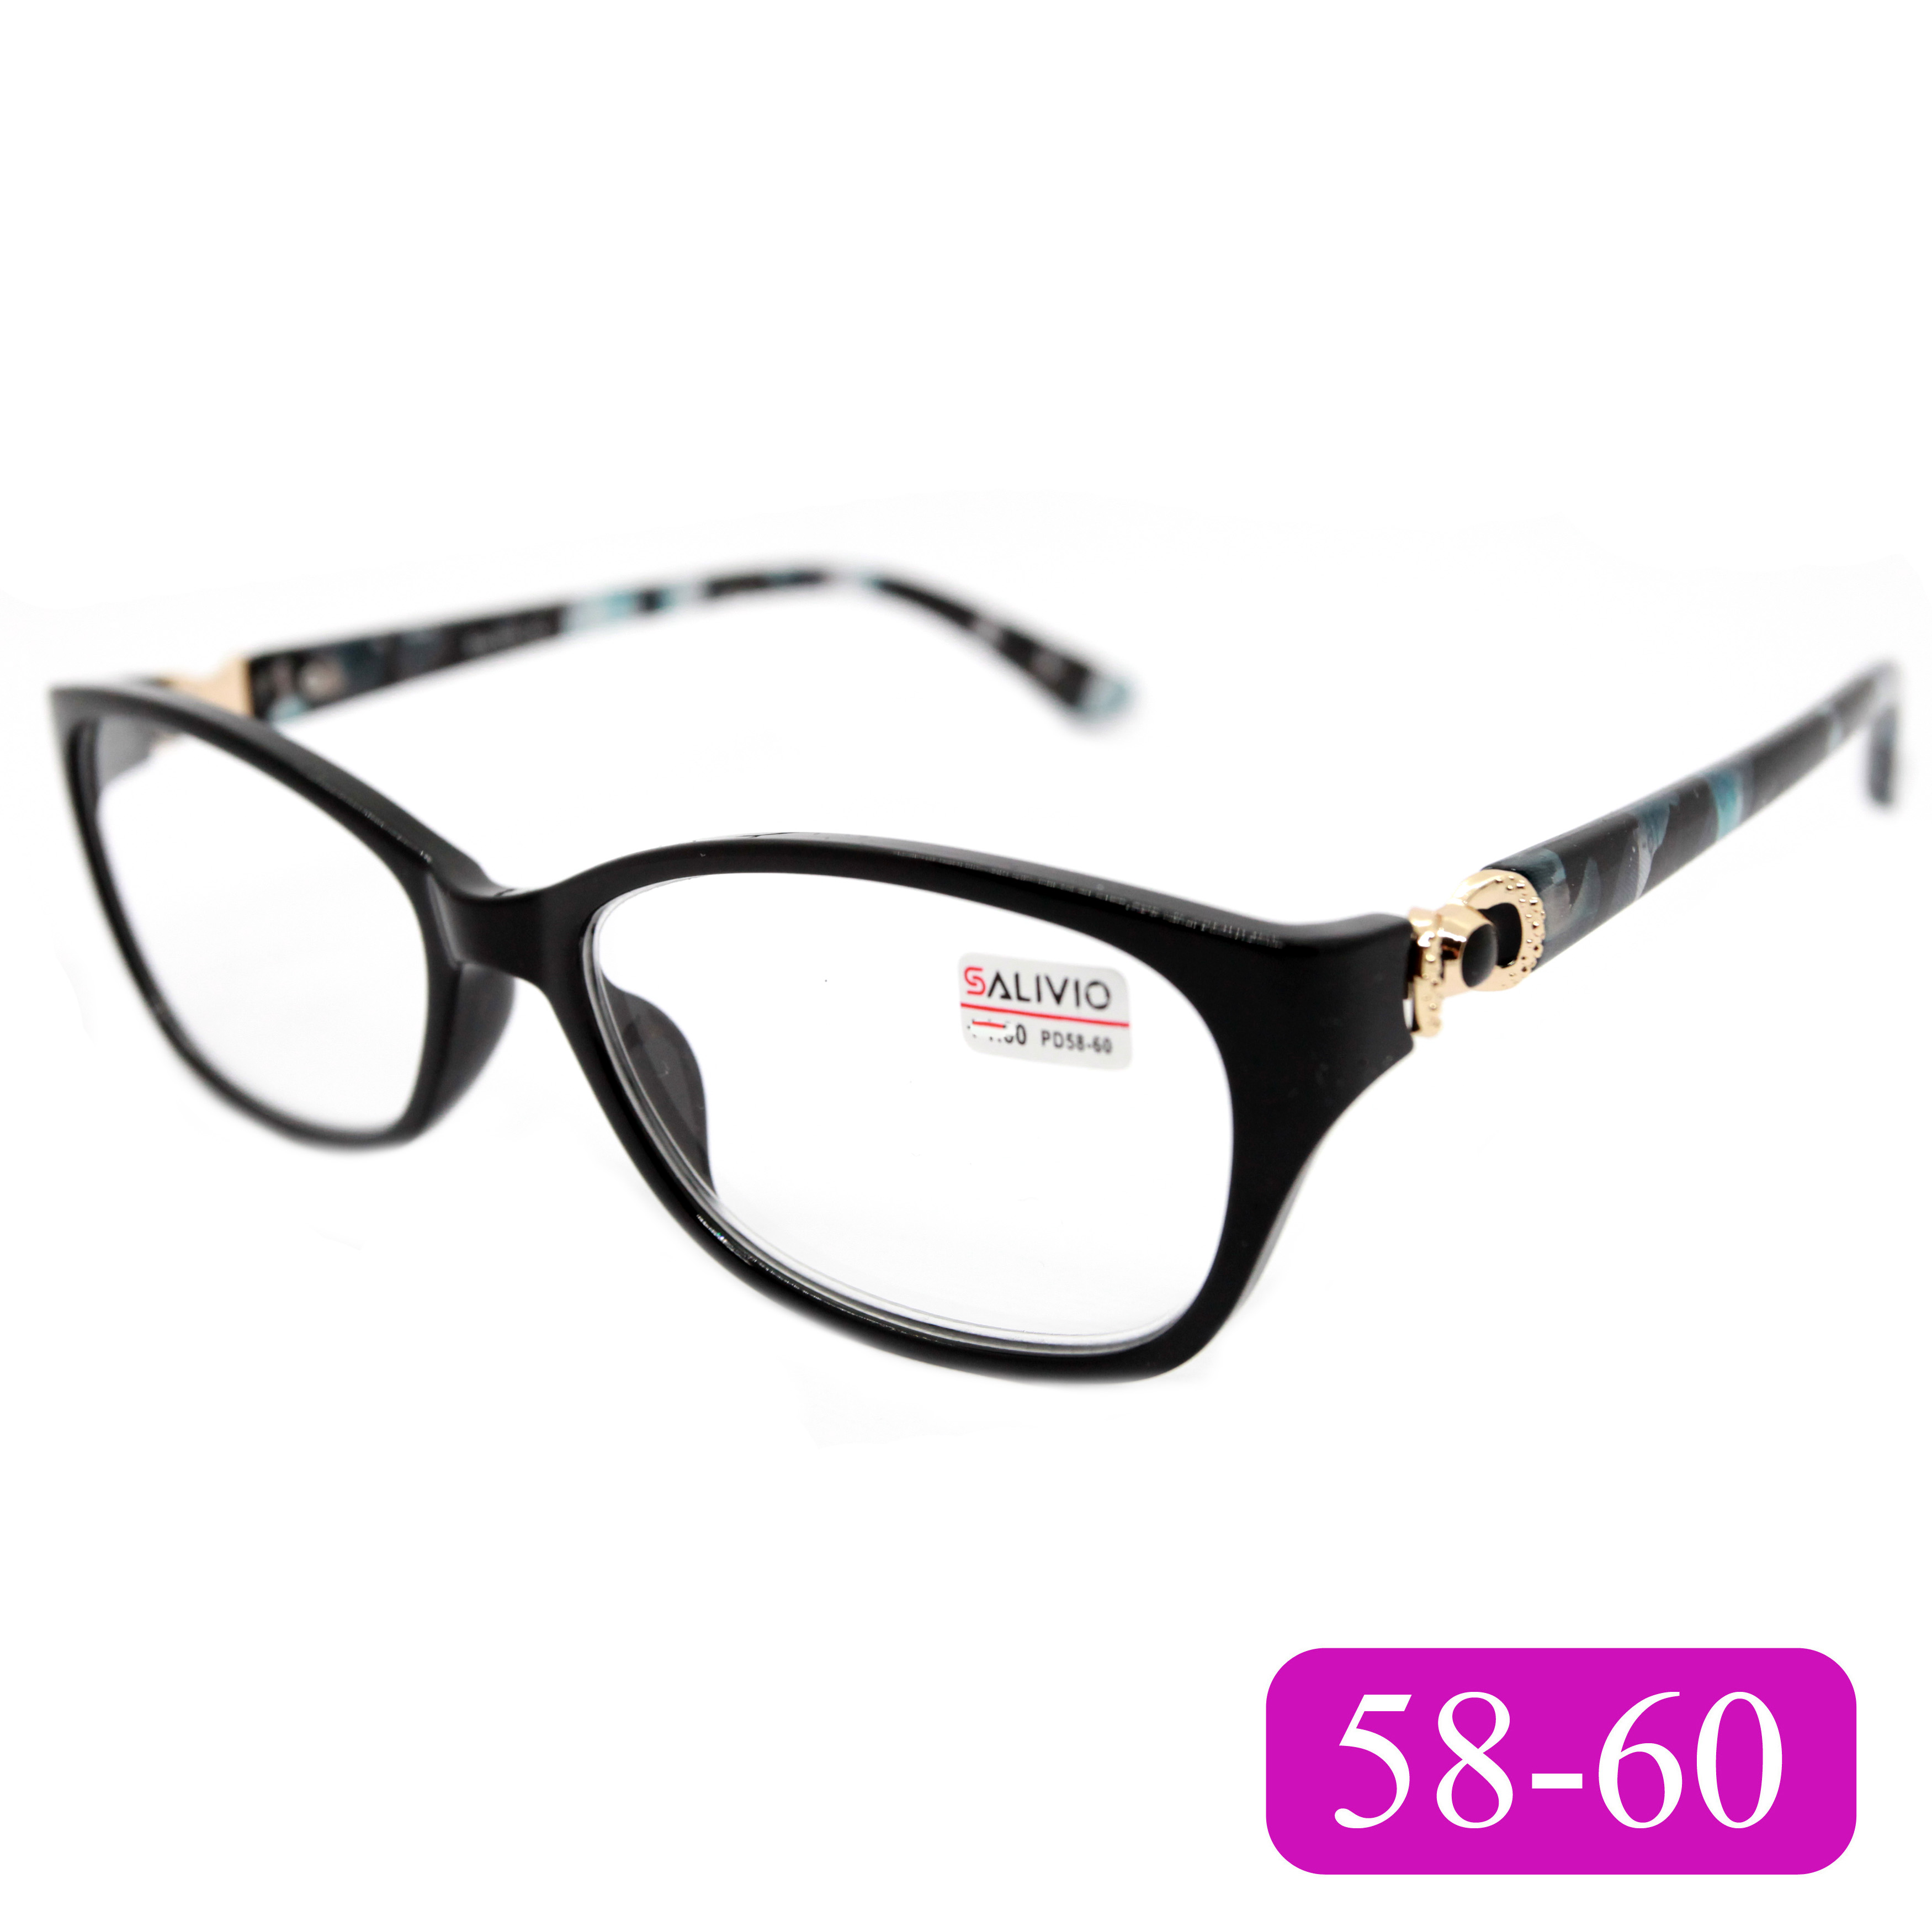 Готовые очки для зрения Salivio 0045 -2,50, без футляра, цвет черный, РЦ 58-60